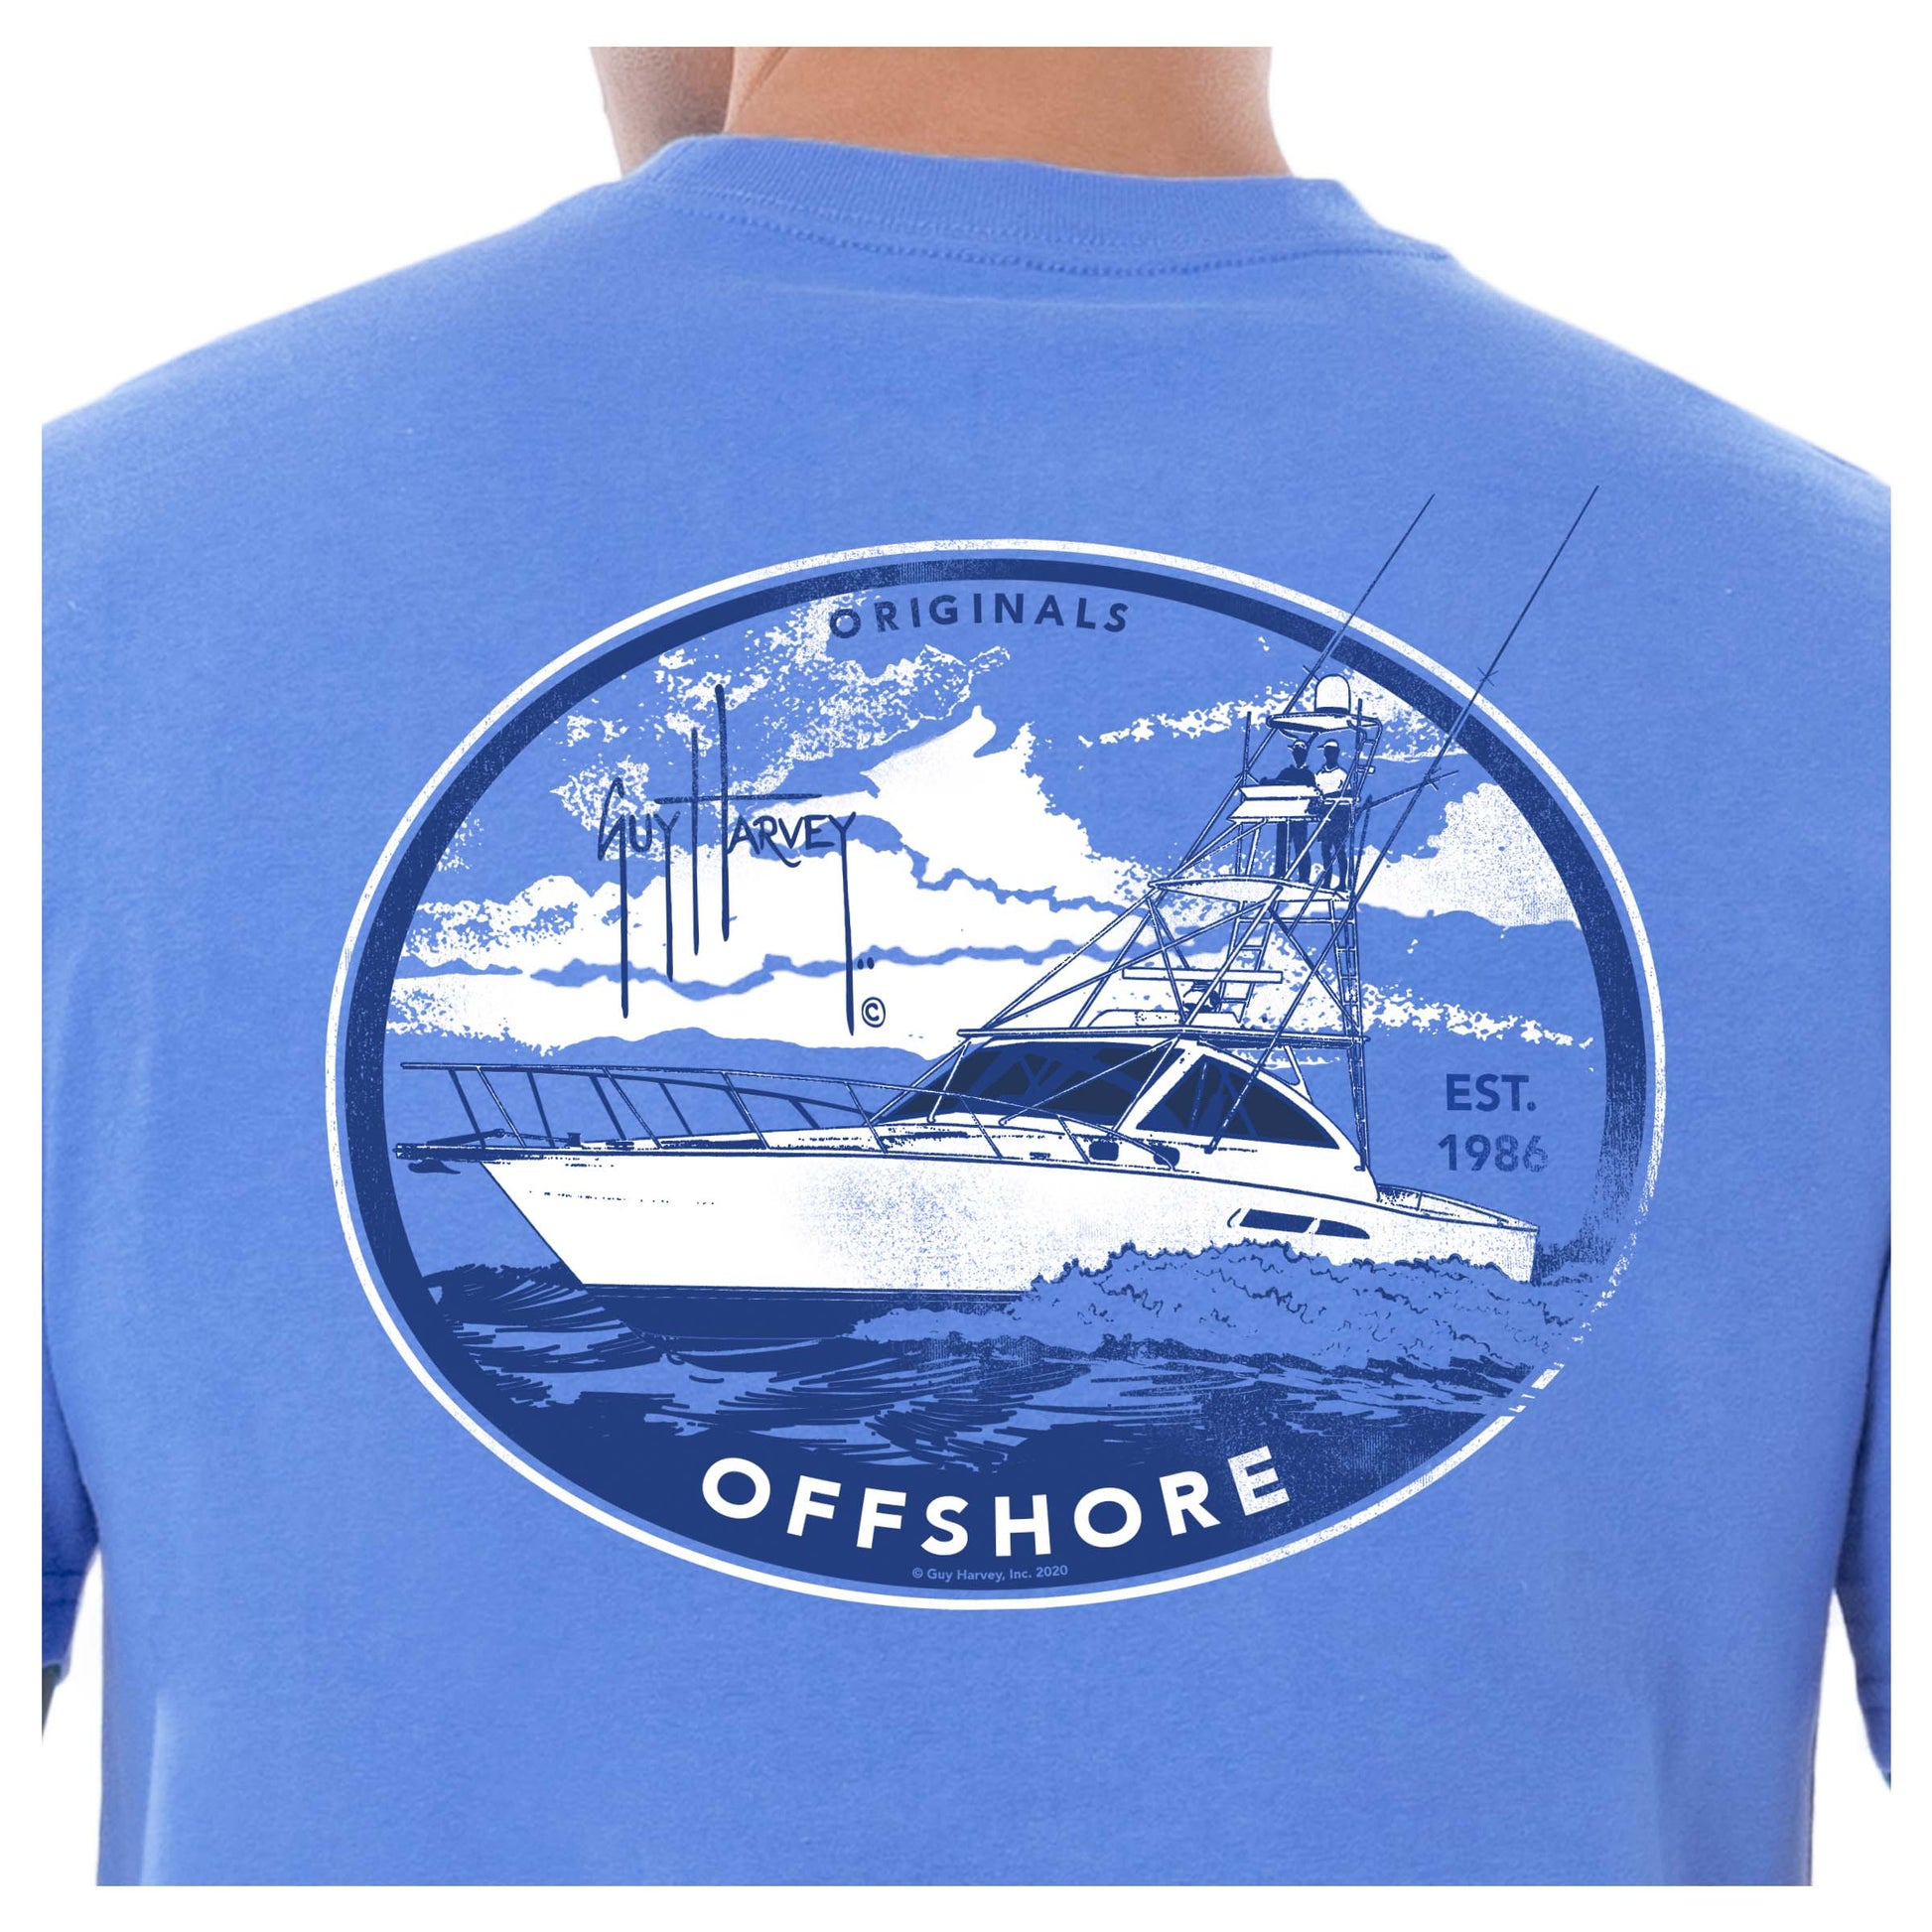 Guy Harvey Men's Offshore Fishing Short Sleeve Pocket T-Shirt 